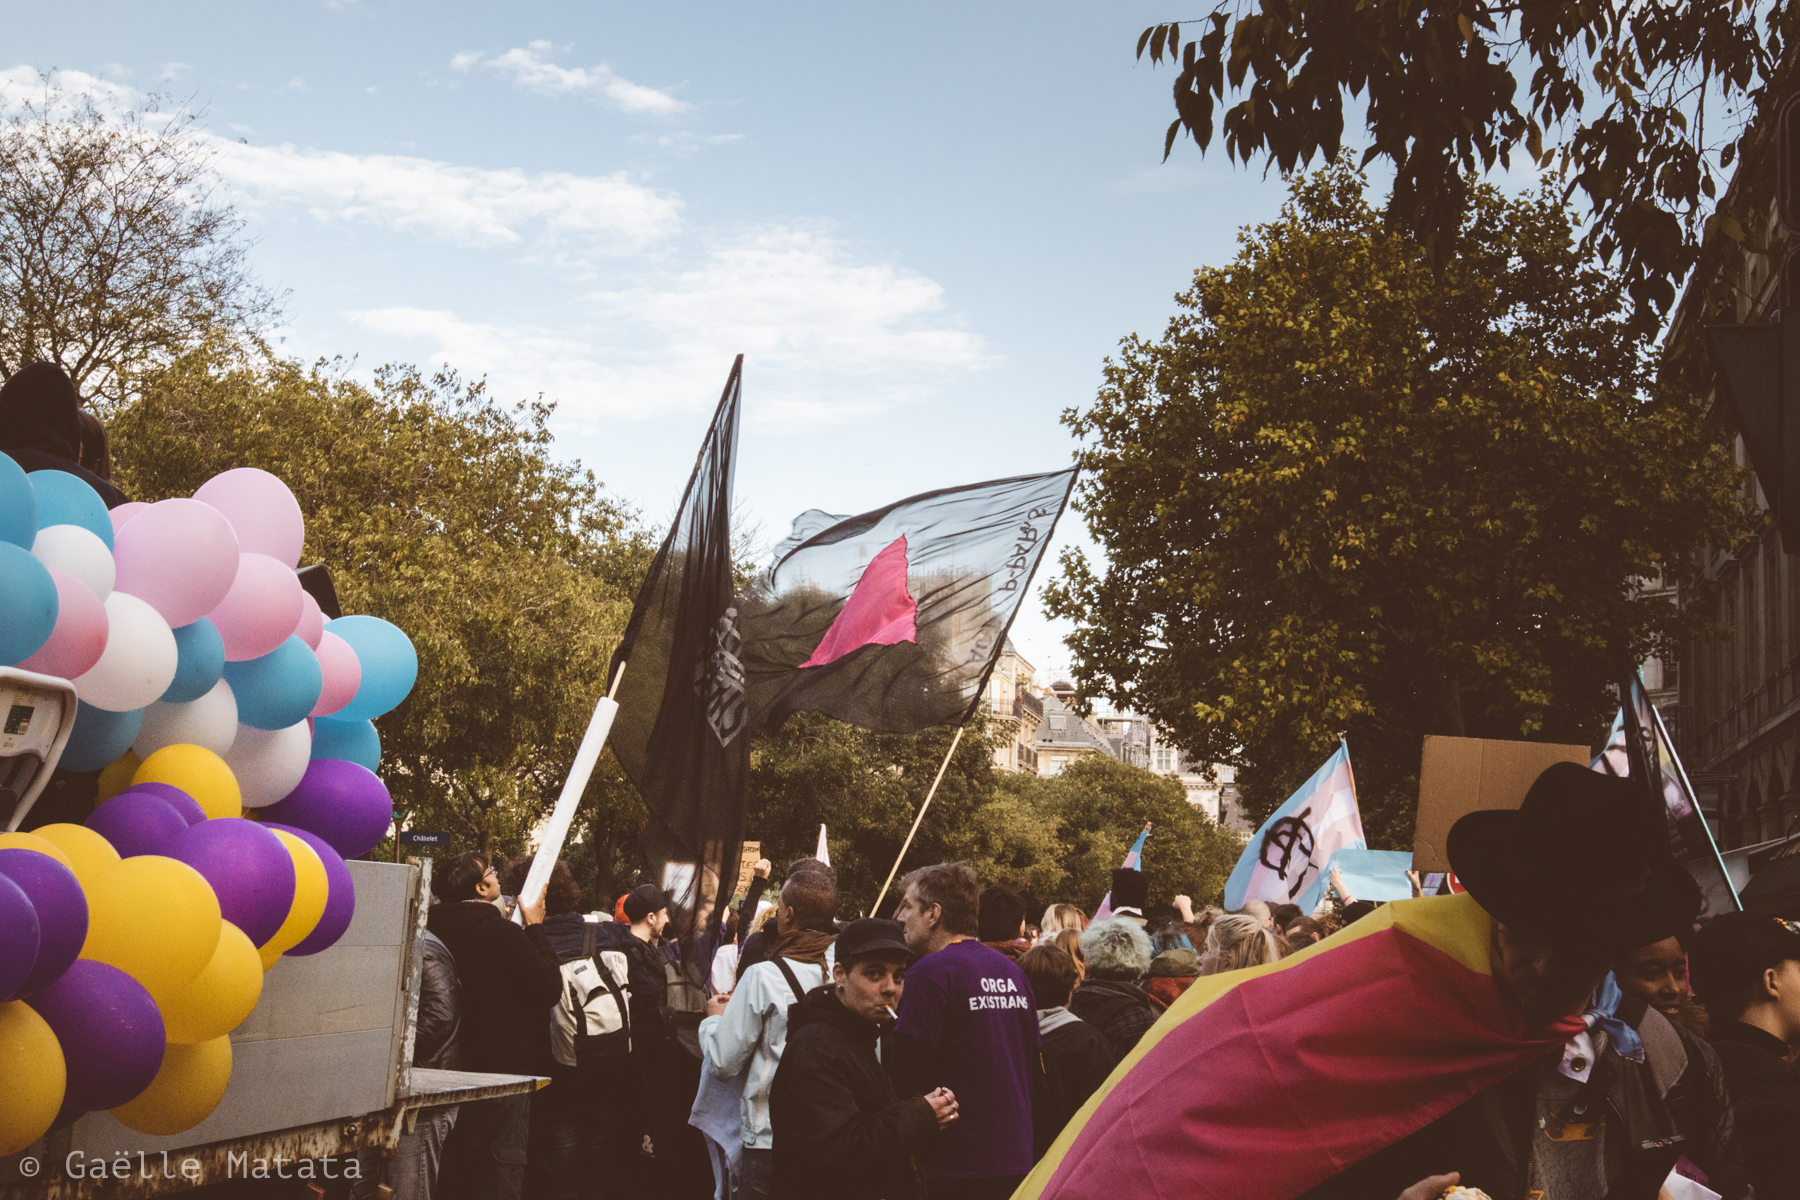 Existrans 2017 à Paris : 21ème marche des personnes trans et intersexes